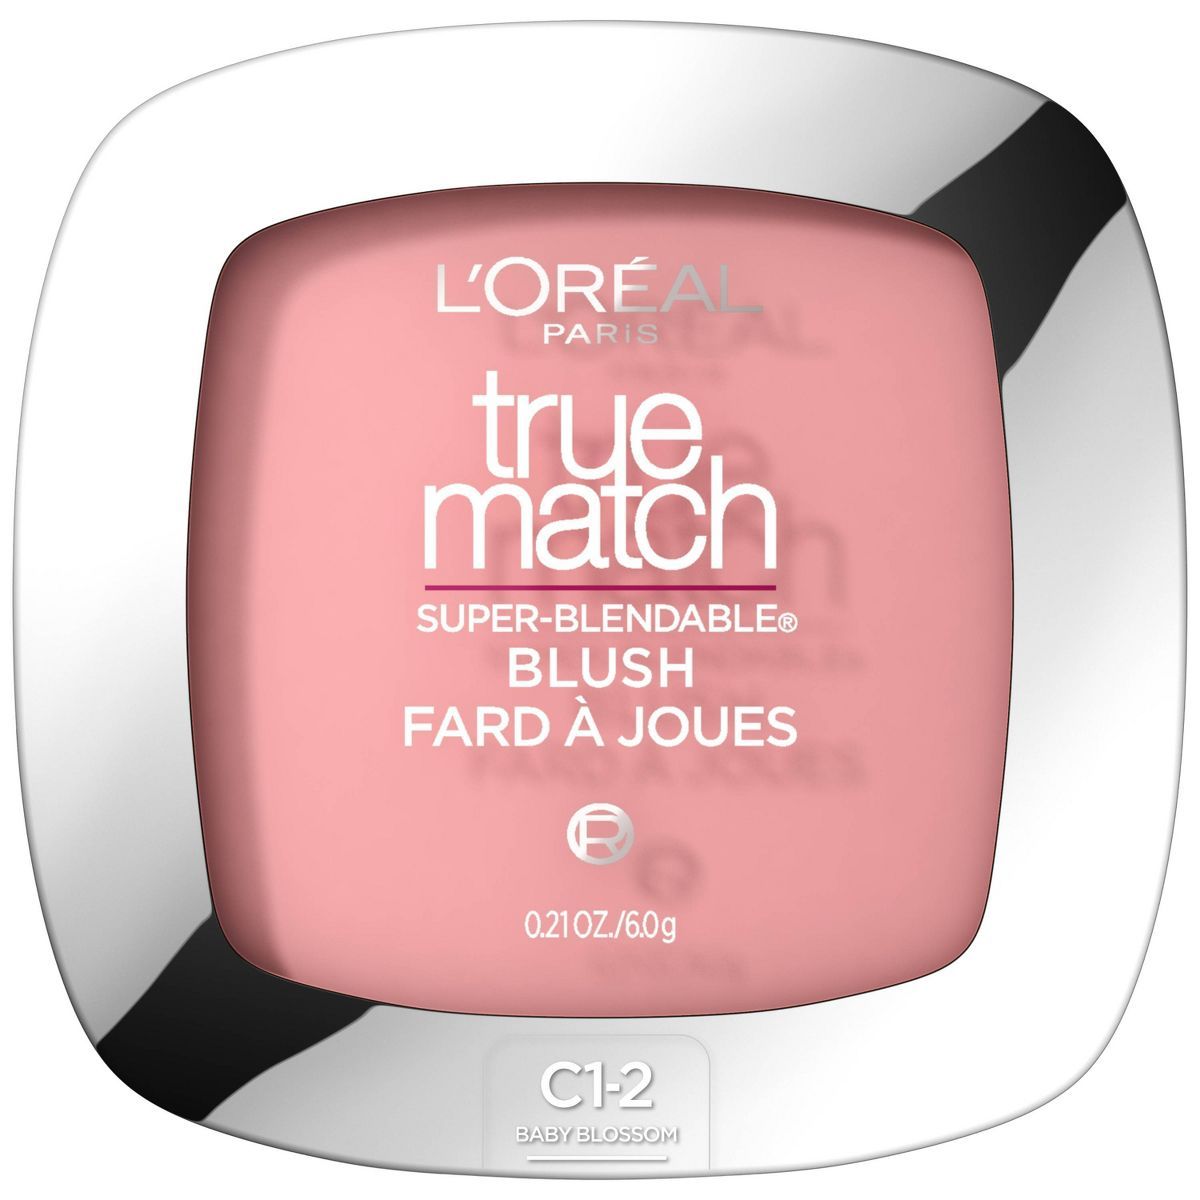 L'Oreal® Paris True Match Super-Blendable Blush | Target